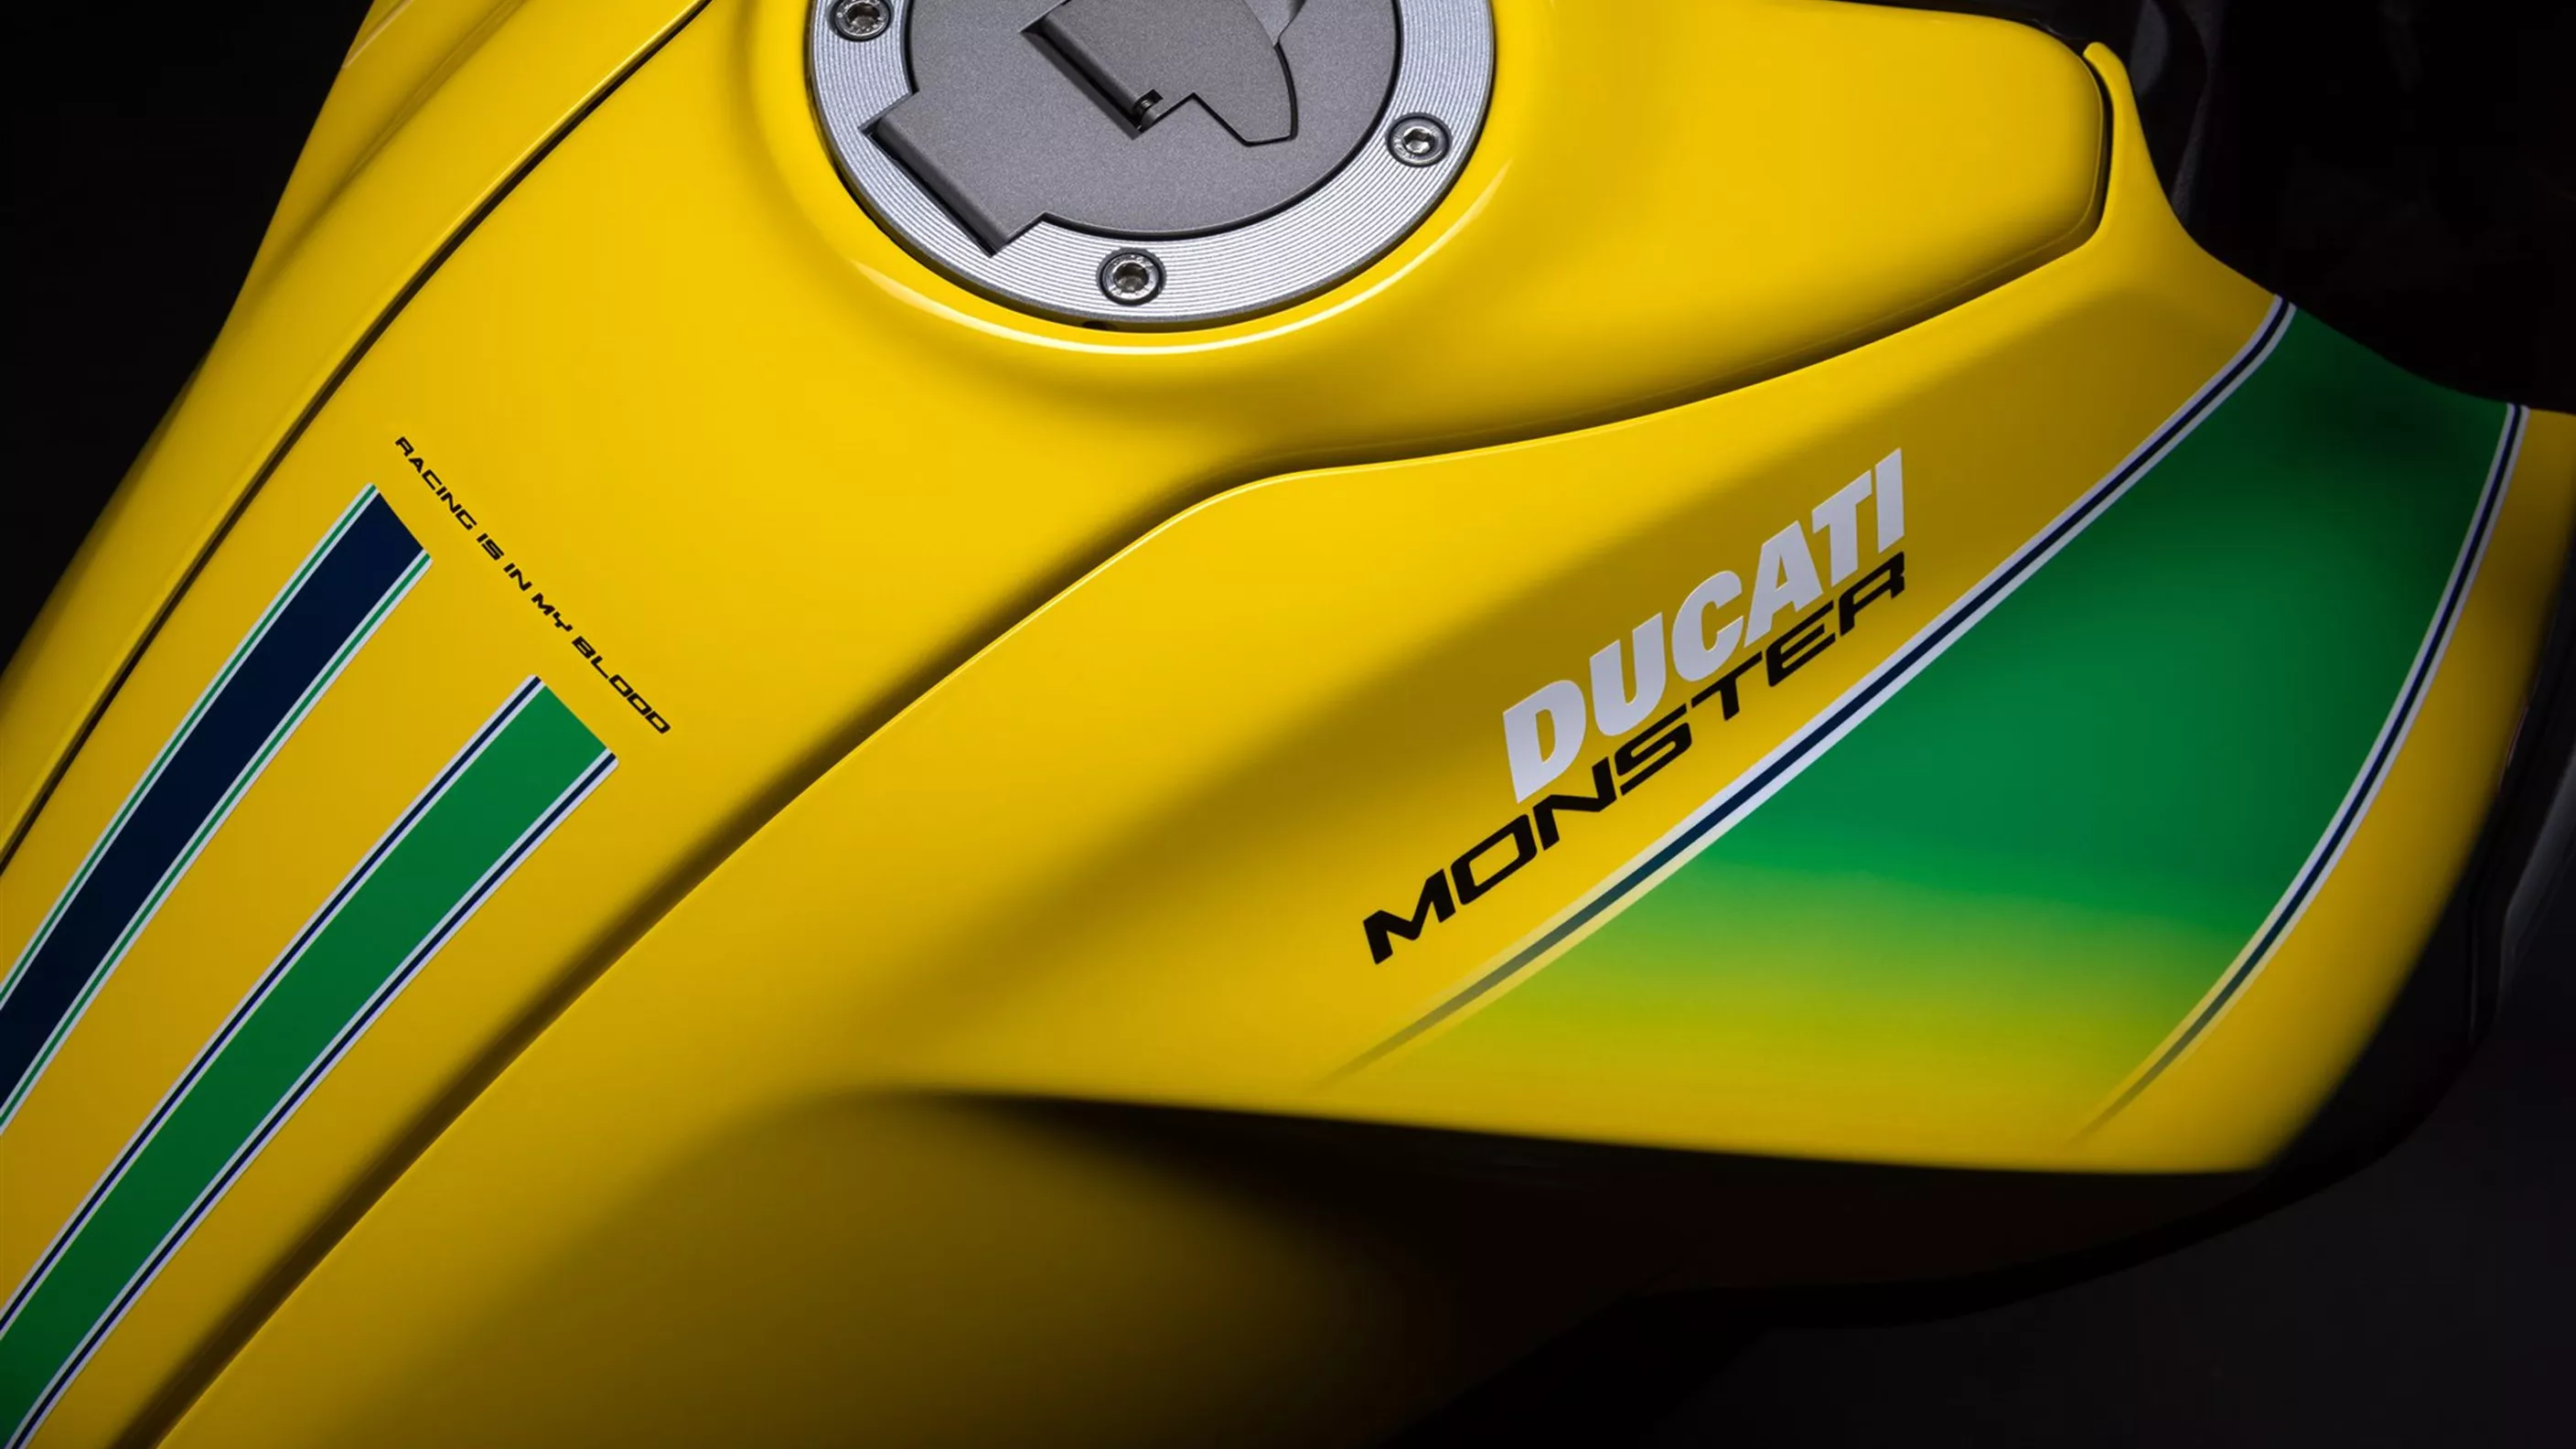 Ducati Monster Senna Special Edition 2024

Ducati je najavio lansiranje posebne edicije svog popularnog modela Monster, nazvane Senna Special Edition 2024. Ova verzija je posvećena legendarnom vozaču Formule 1 Ayrtonu Senni i dolazi s nizom ekskluzivnih značajki koje će oduševiti ljubitelje motocikala.

Motor je opremljen najnovijom tehnologijom, uključujući napredni sustav kontrole trakcije i ABS kočnice. Snaga dolazi iz 937cc Testastretta dvocilindričnog motora, koji pruža izvanredne performanse i glatku vožnju. Posebna Senna boja i grafike dodatno naglašavaju sportski duh ovog motocikla.

Ducati Monster Senna Special Edition 2024 također uključuje premium komponente kao što su Öhlins ovjes i Brembo kočnice, što osigurava vrhunsku upravljivost i sigurnost. Ovaj model će biti dostupan u ograničenom broju, čineći ga pravim kolekcionarskim primjerkom.

Za više informacija o ovom ekskluzivnom modelu, posjetite službenu Ducati web stranicu.